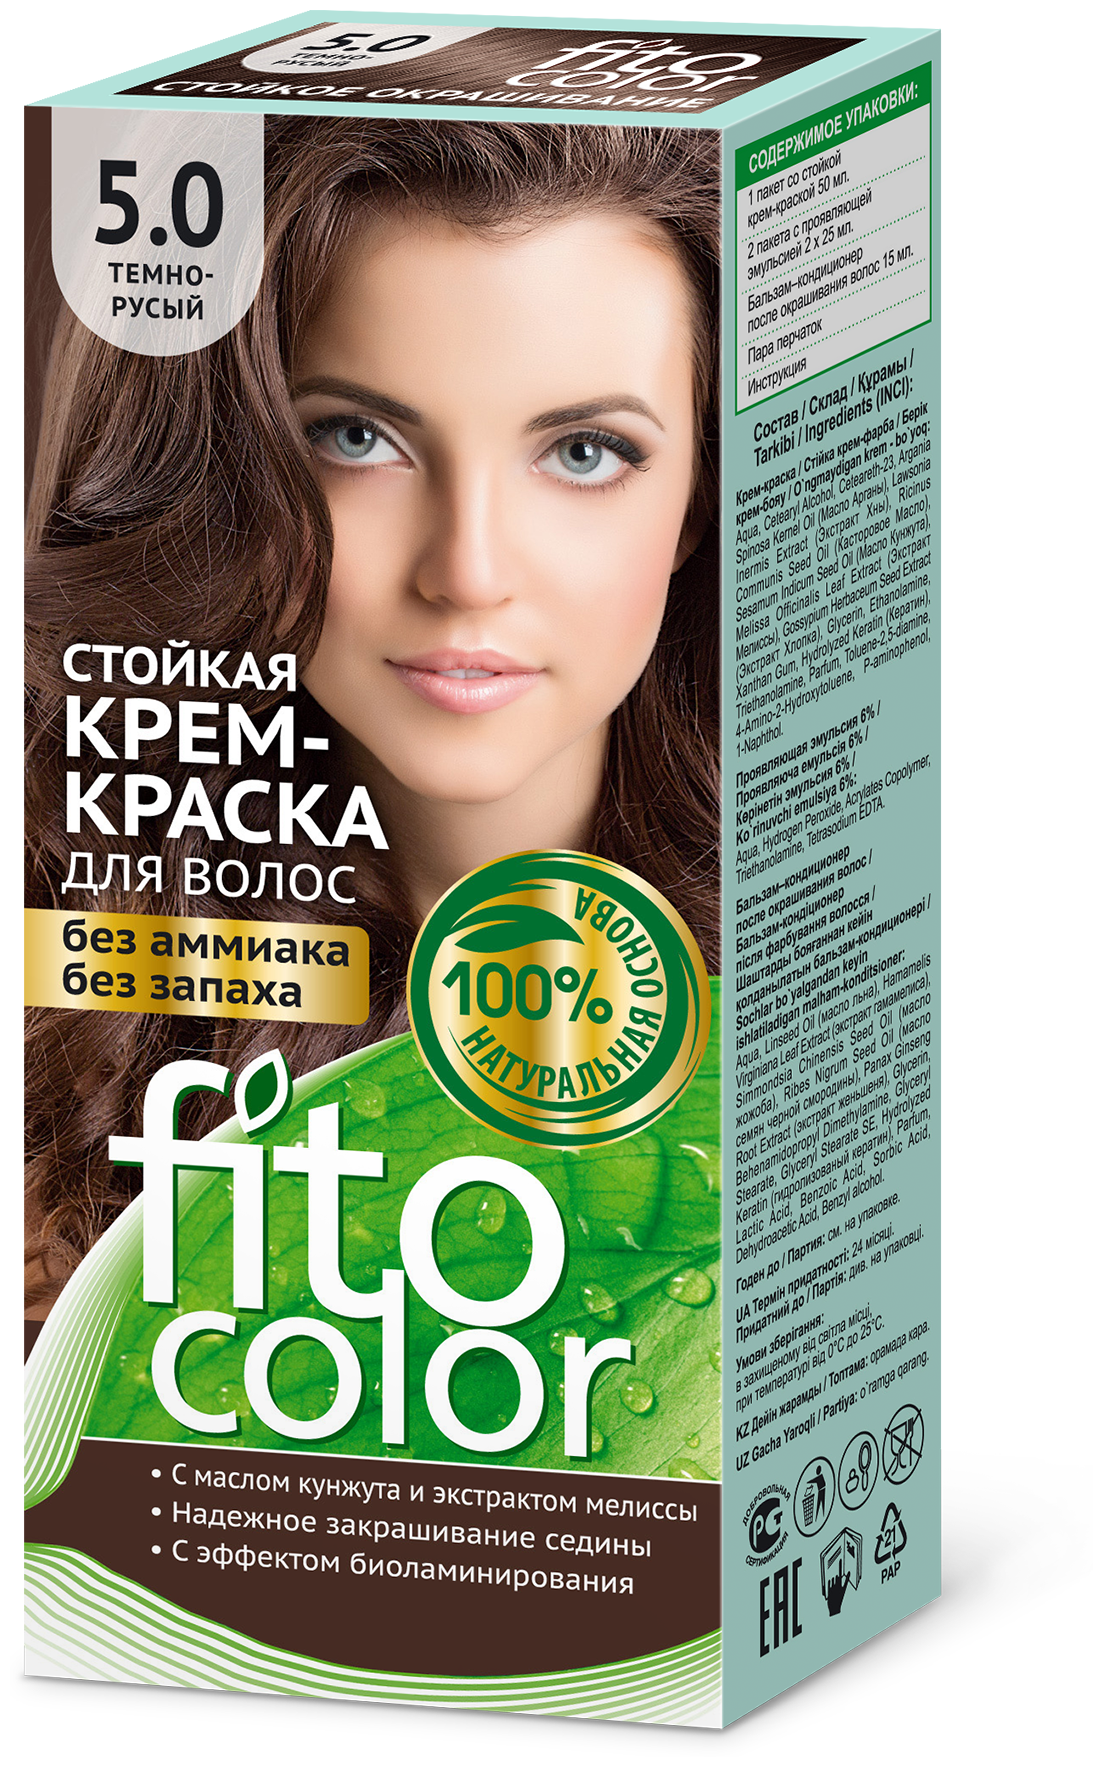 Fito косметик Fitocolor стойкая крем-краска для волос